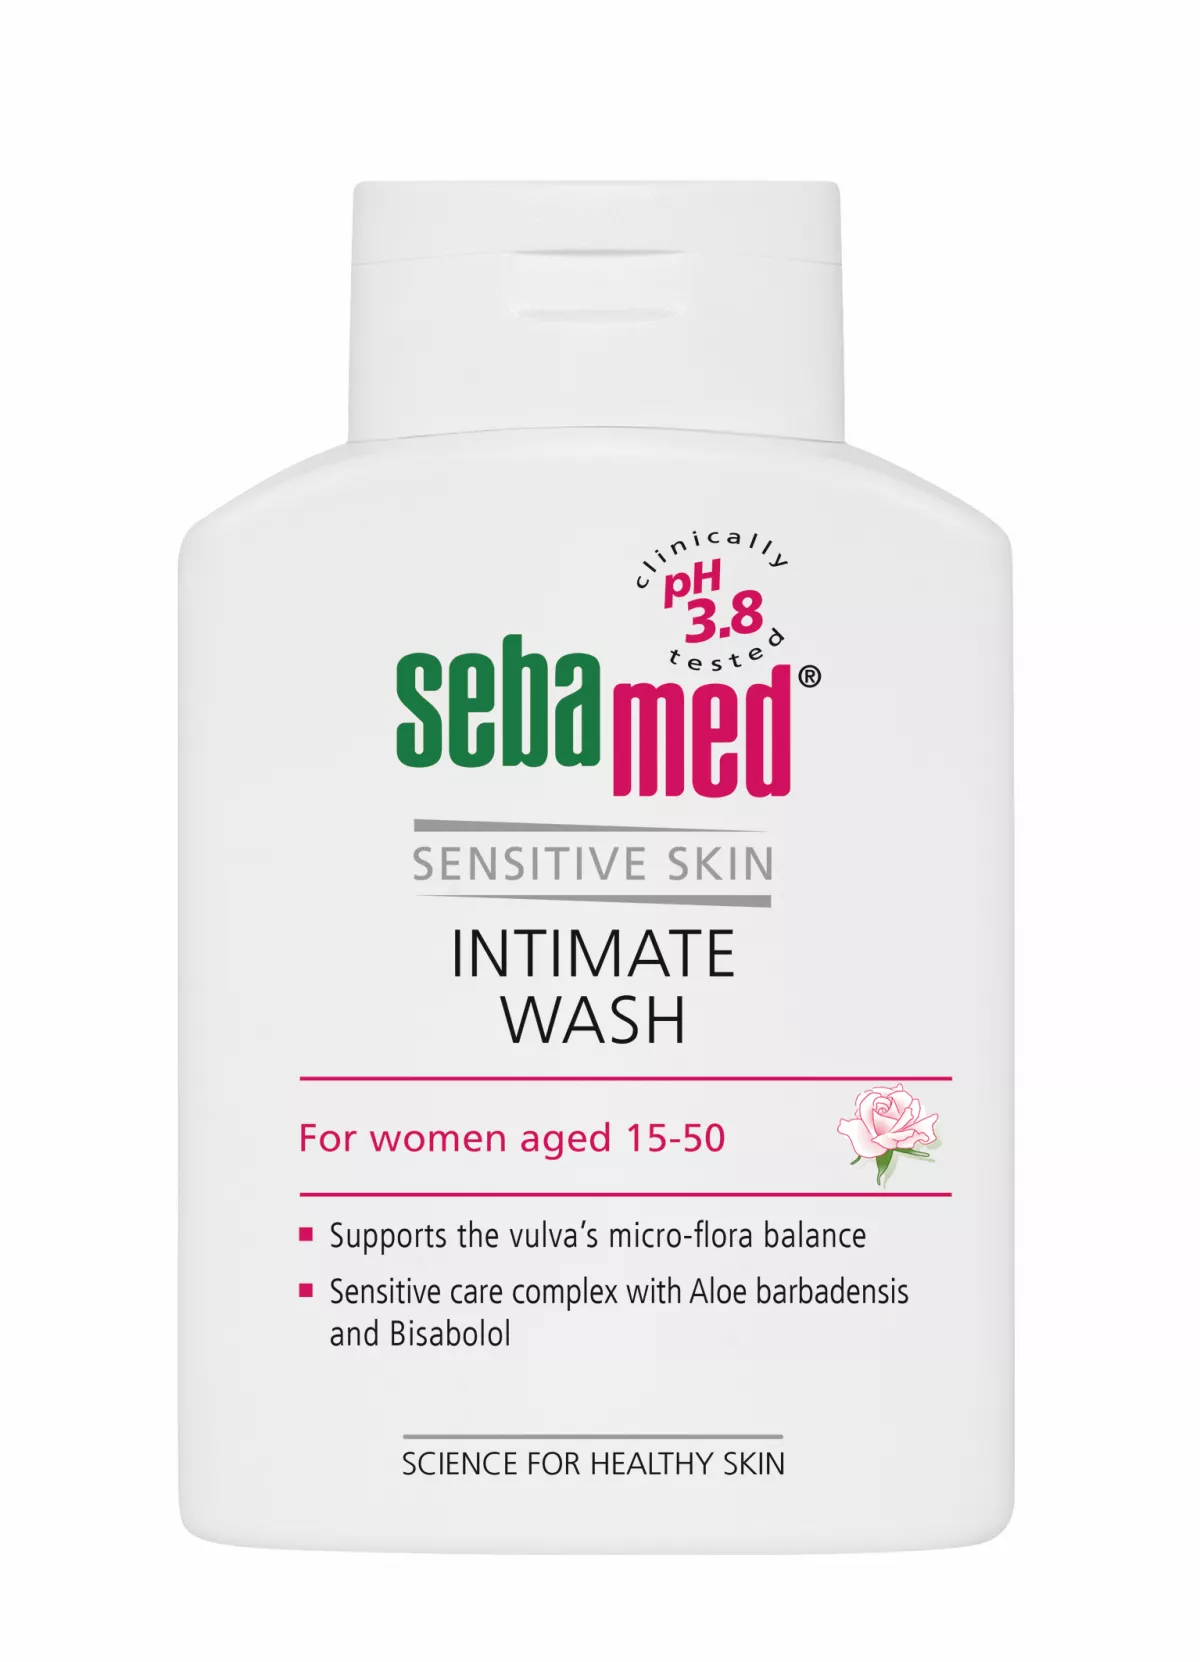 Sebamed Sensitive Skin Gel dermatologic pentru igienă intimă feminină (15-50 ani) * 200 ml , [],clinicafarm.ro